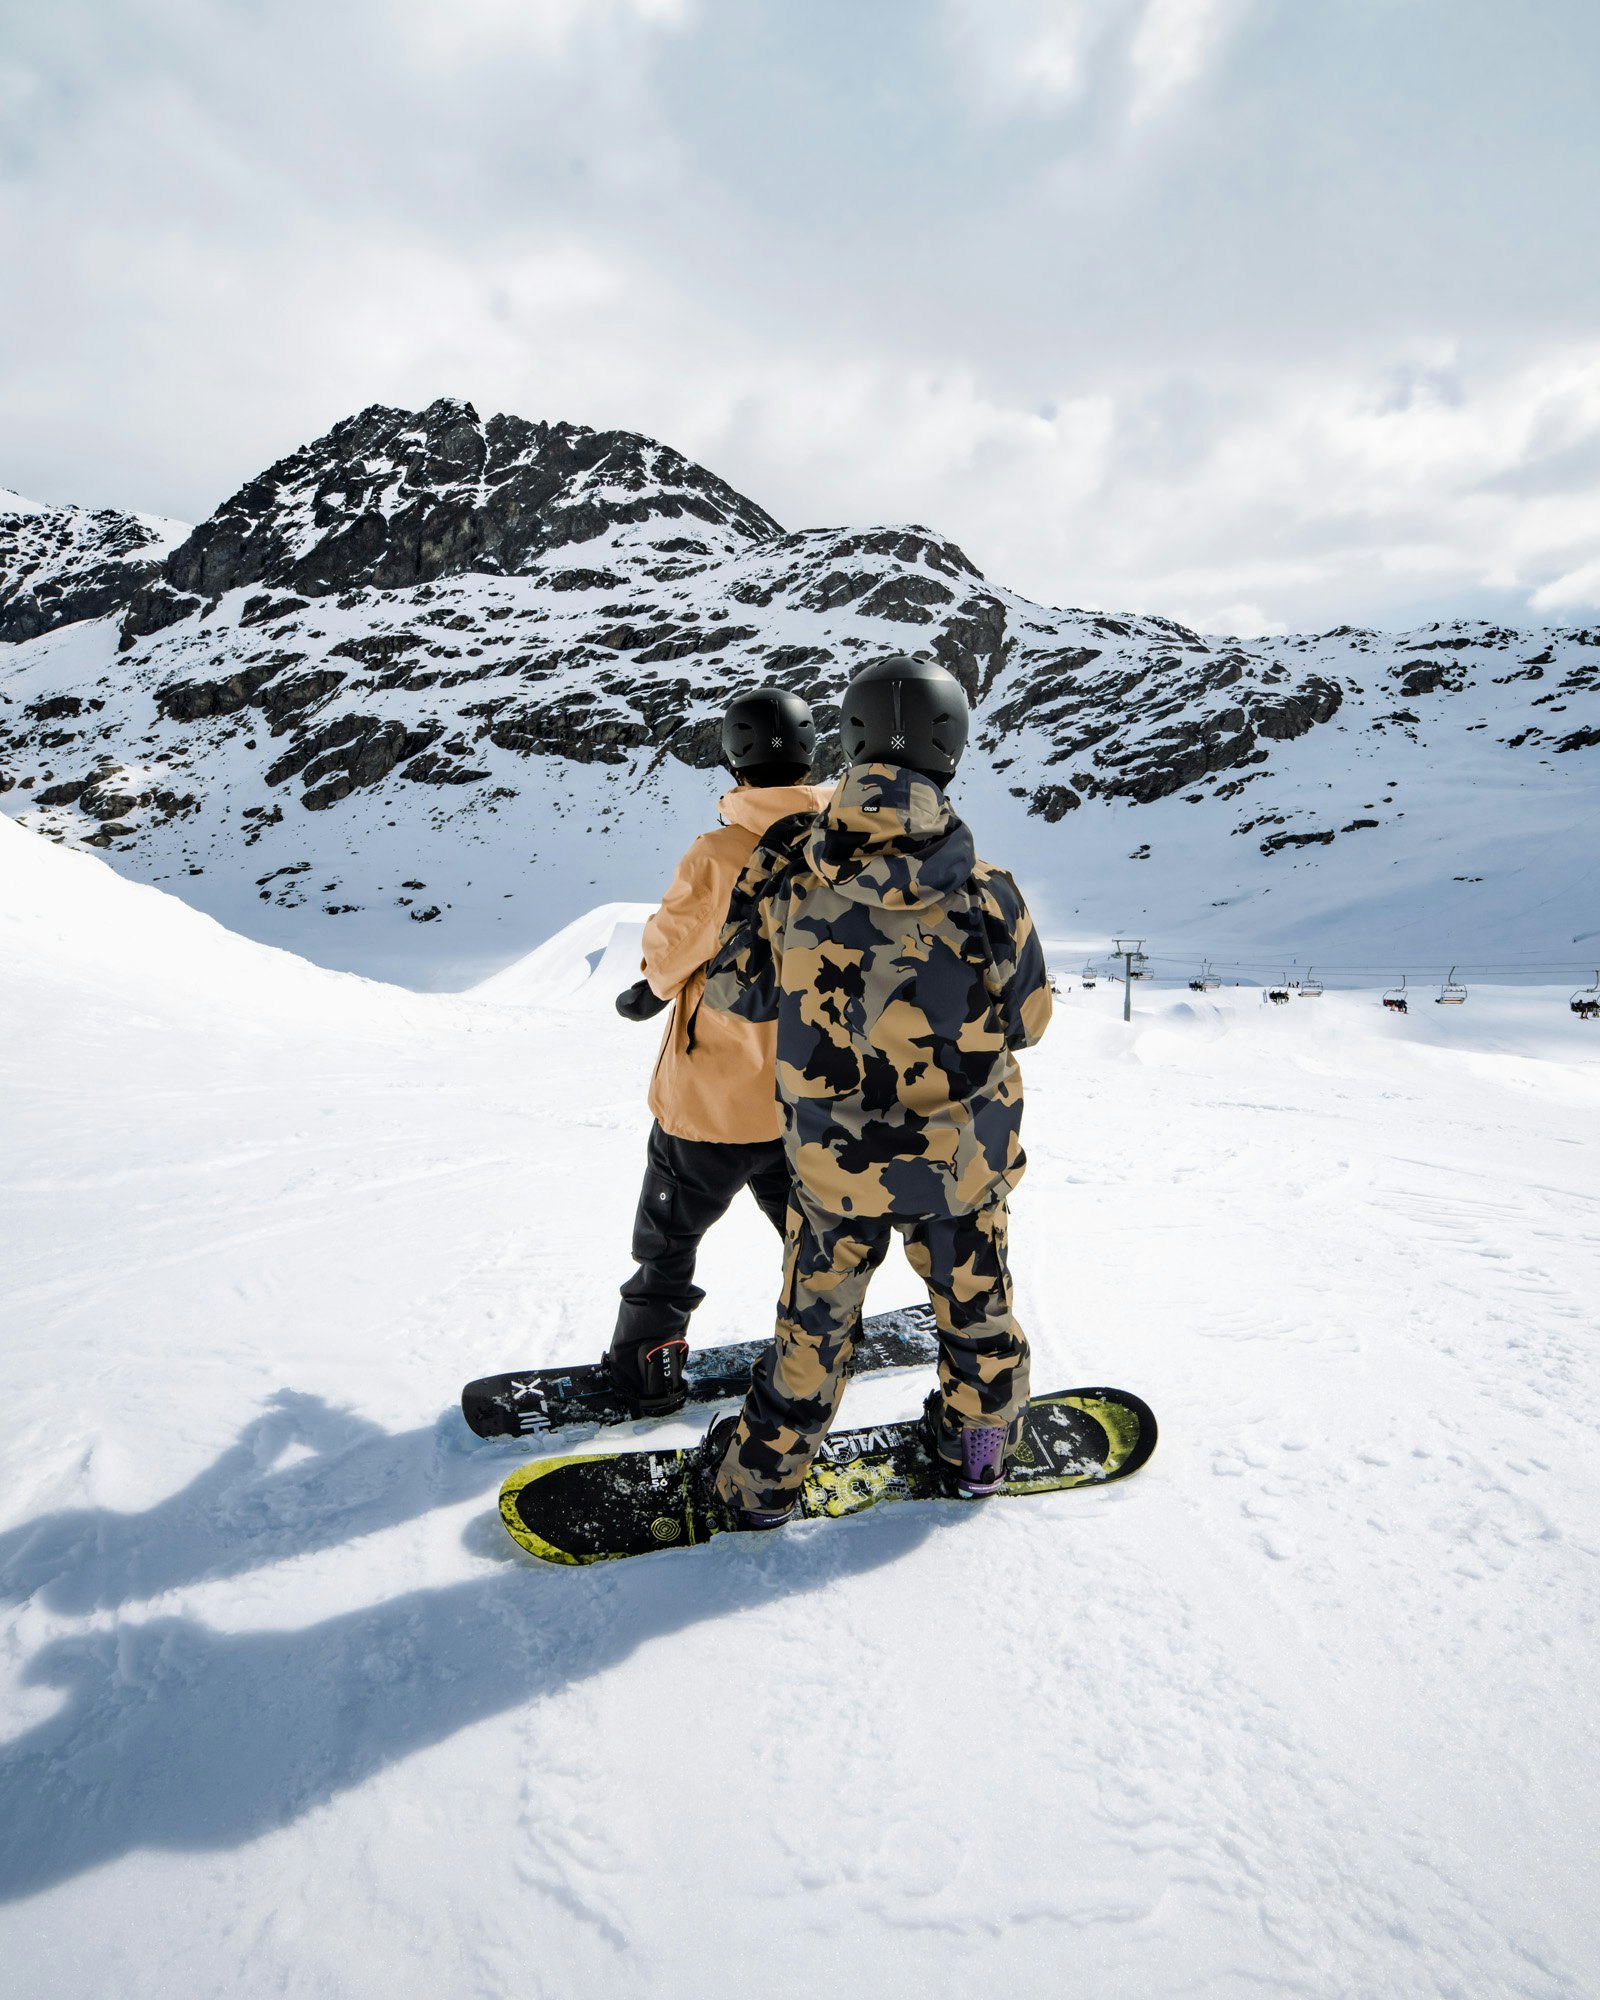 Kan ik snowboarden mezelf leren?